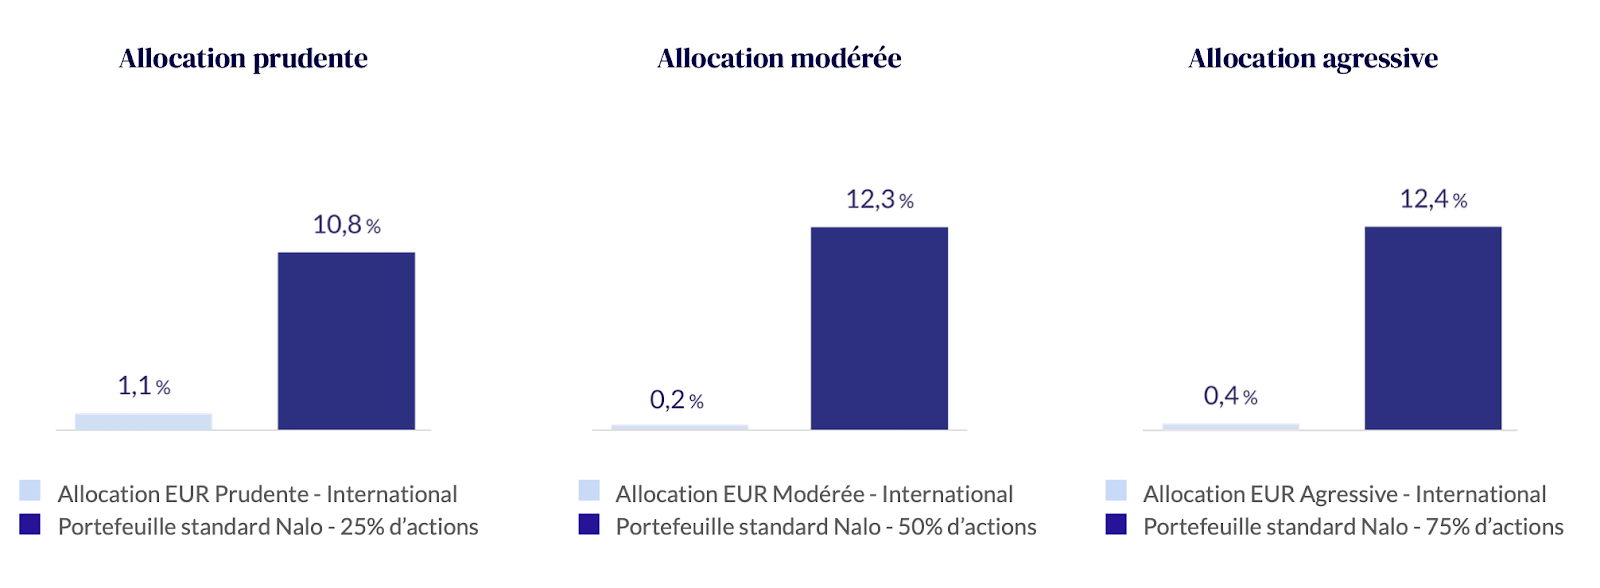 Performances comparées sur la période 2018-2020 du portefeuille standard de Nalo et des performances moyennes (fournies par Morningstar*) de 1 760 fonds patrimoniaux, proposant des allocations internationales en devise euro.